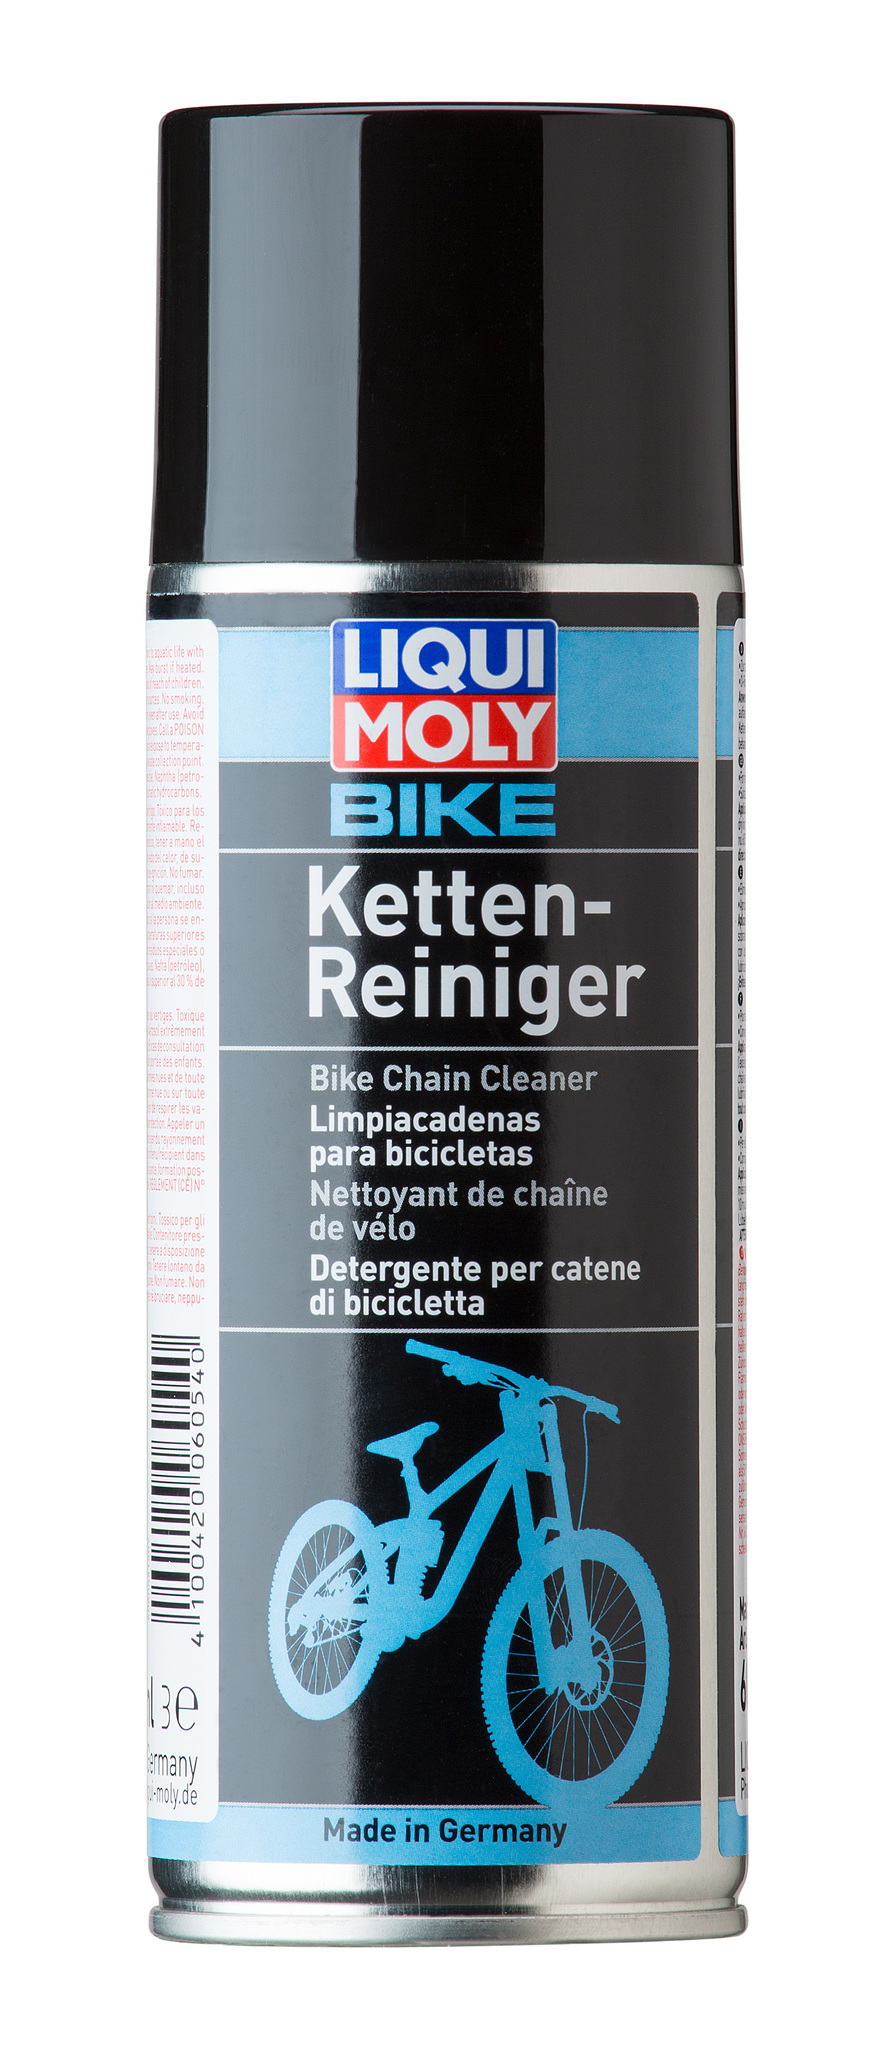 Liqui Moly Bike Kettenreiniger - Очиститель цепей велосипеда